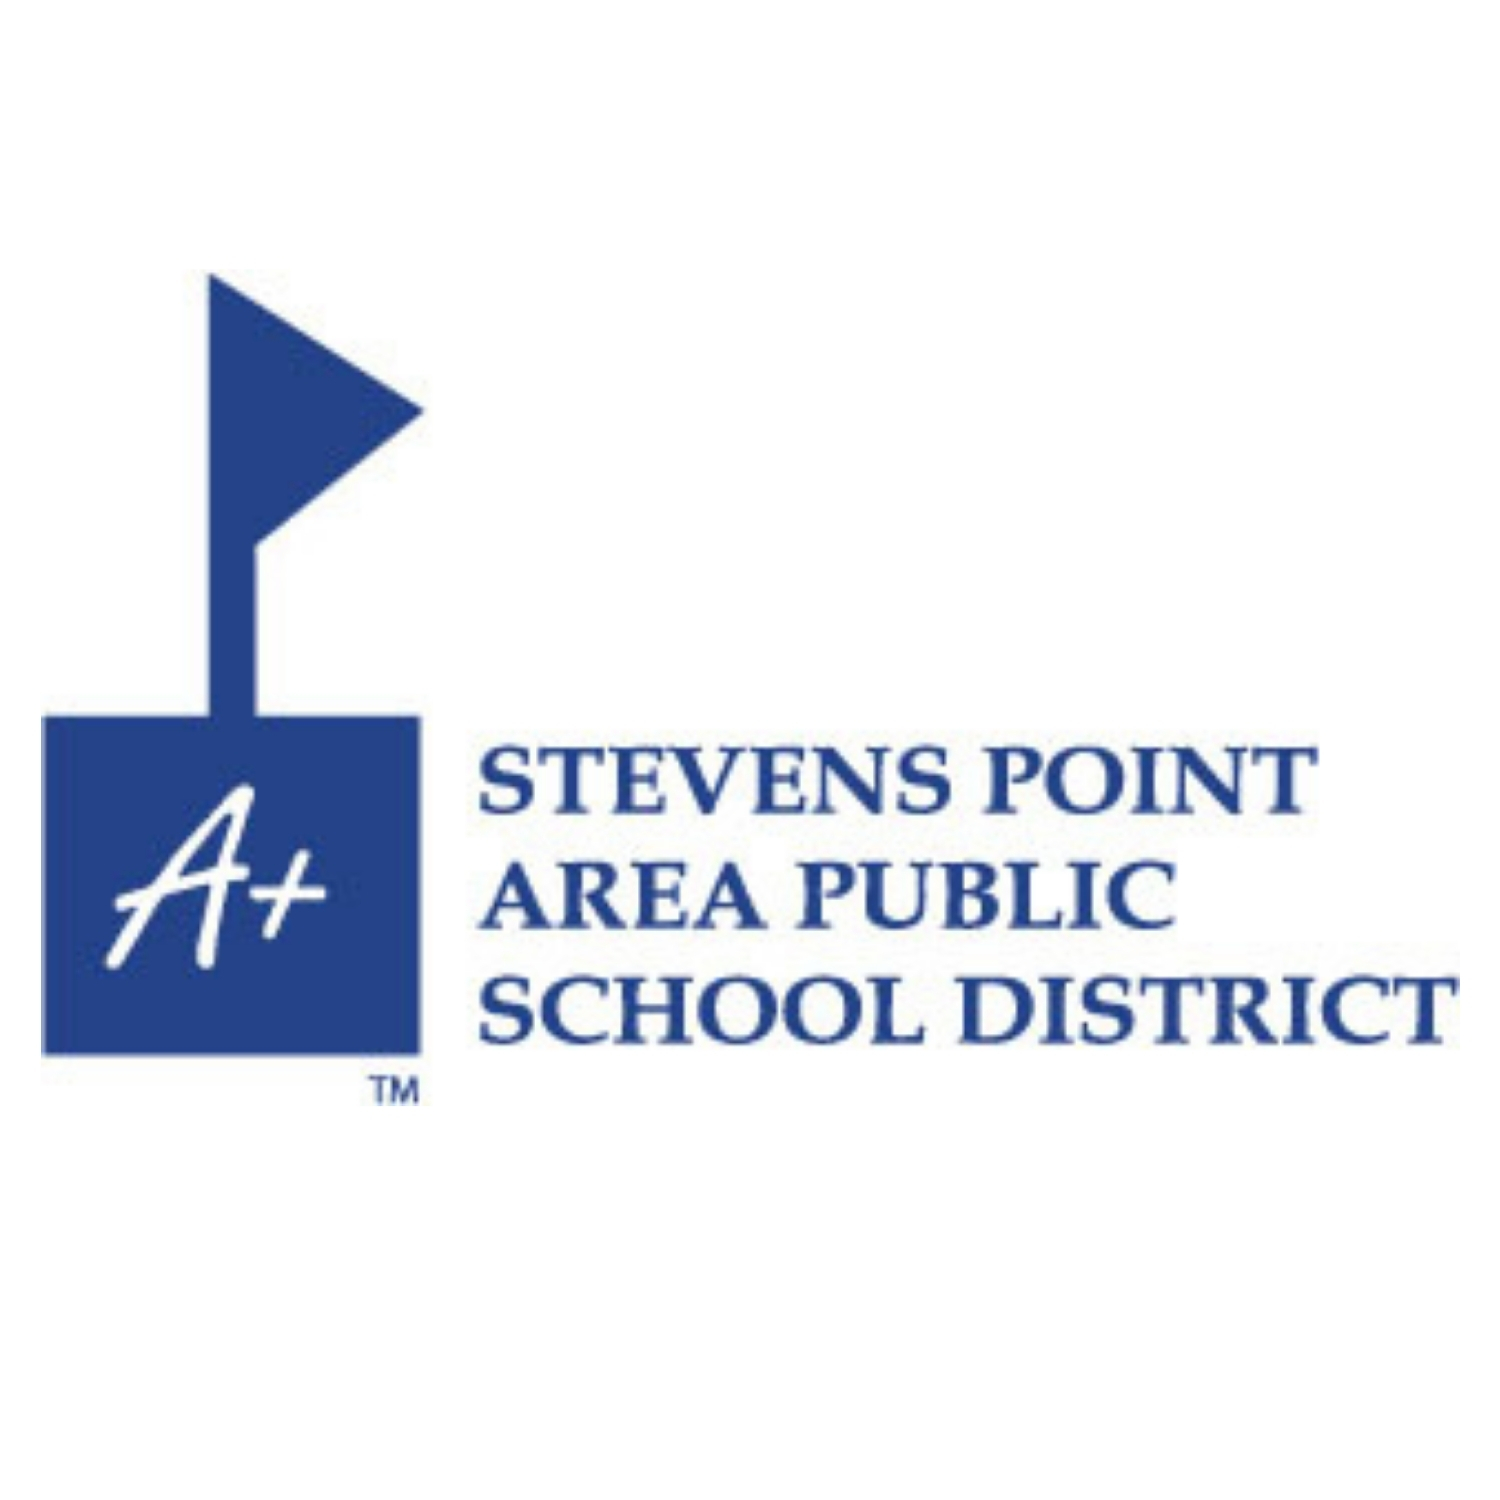 Stevens Point Area Online Learning Center (OLC)